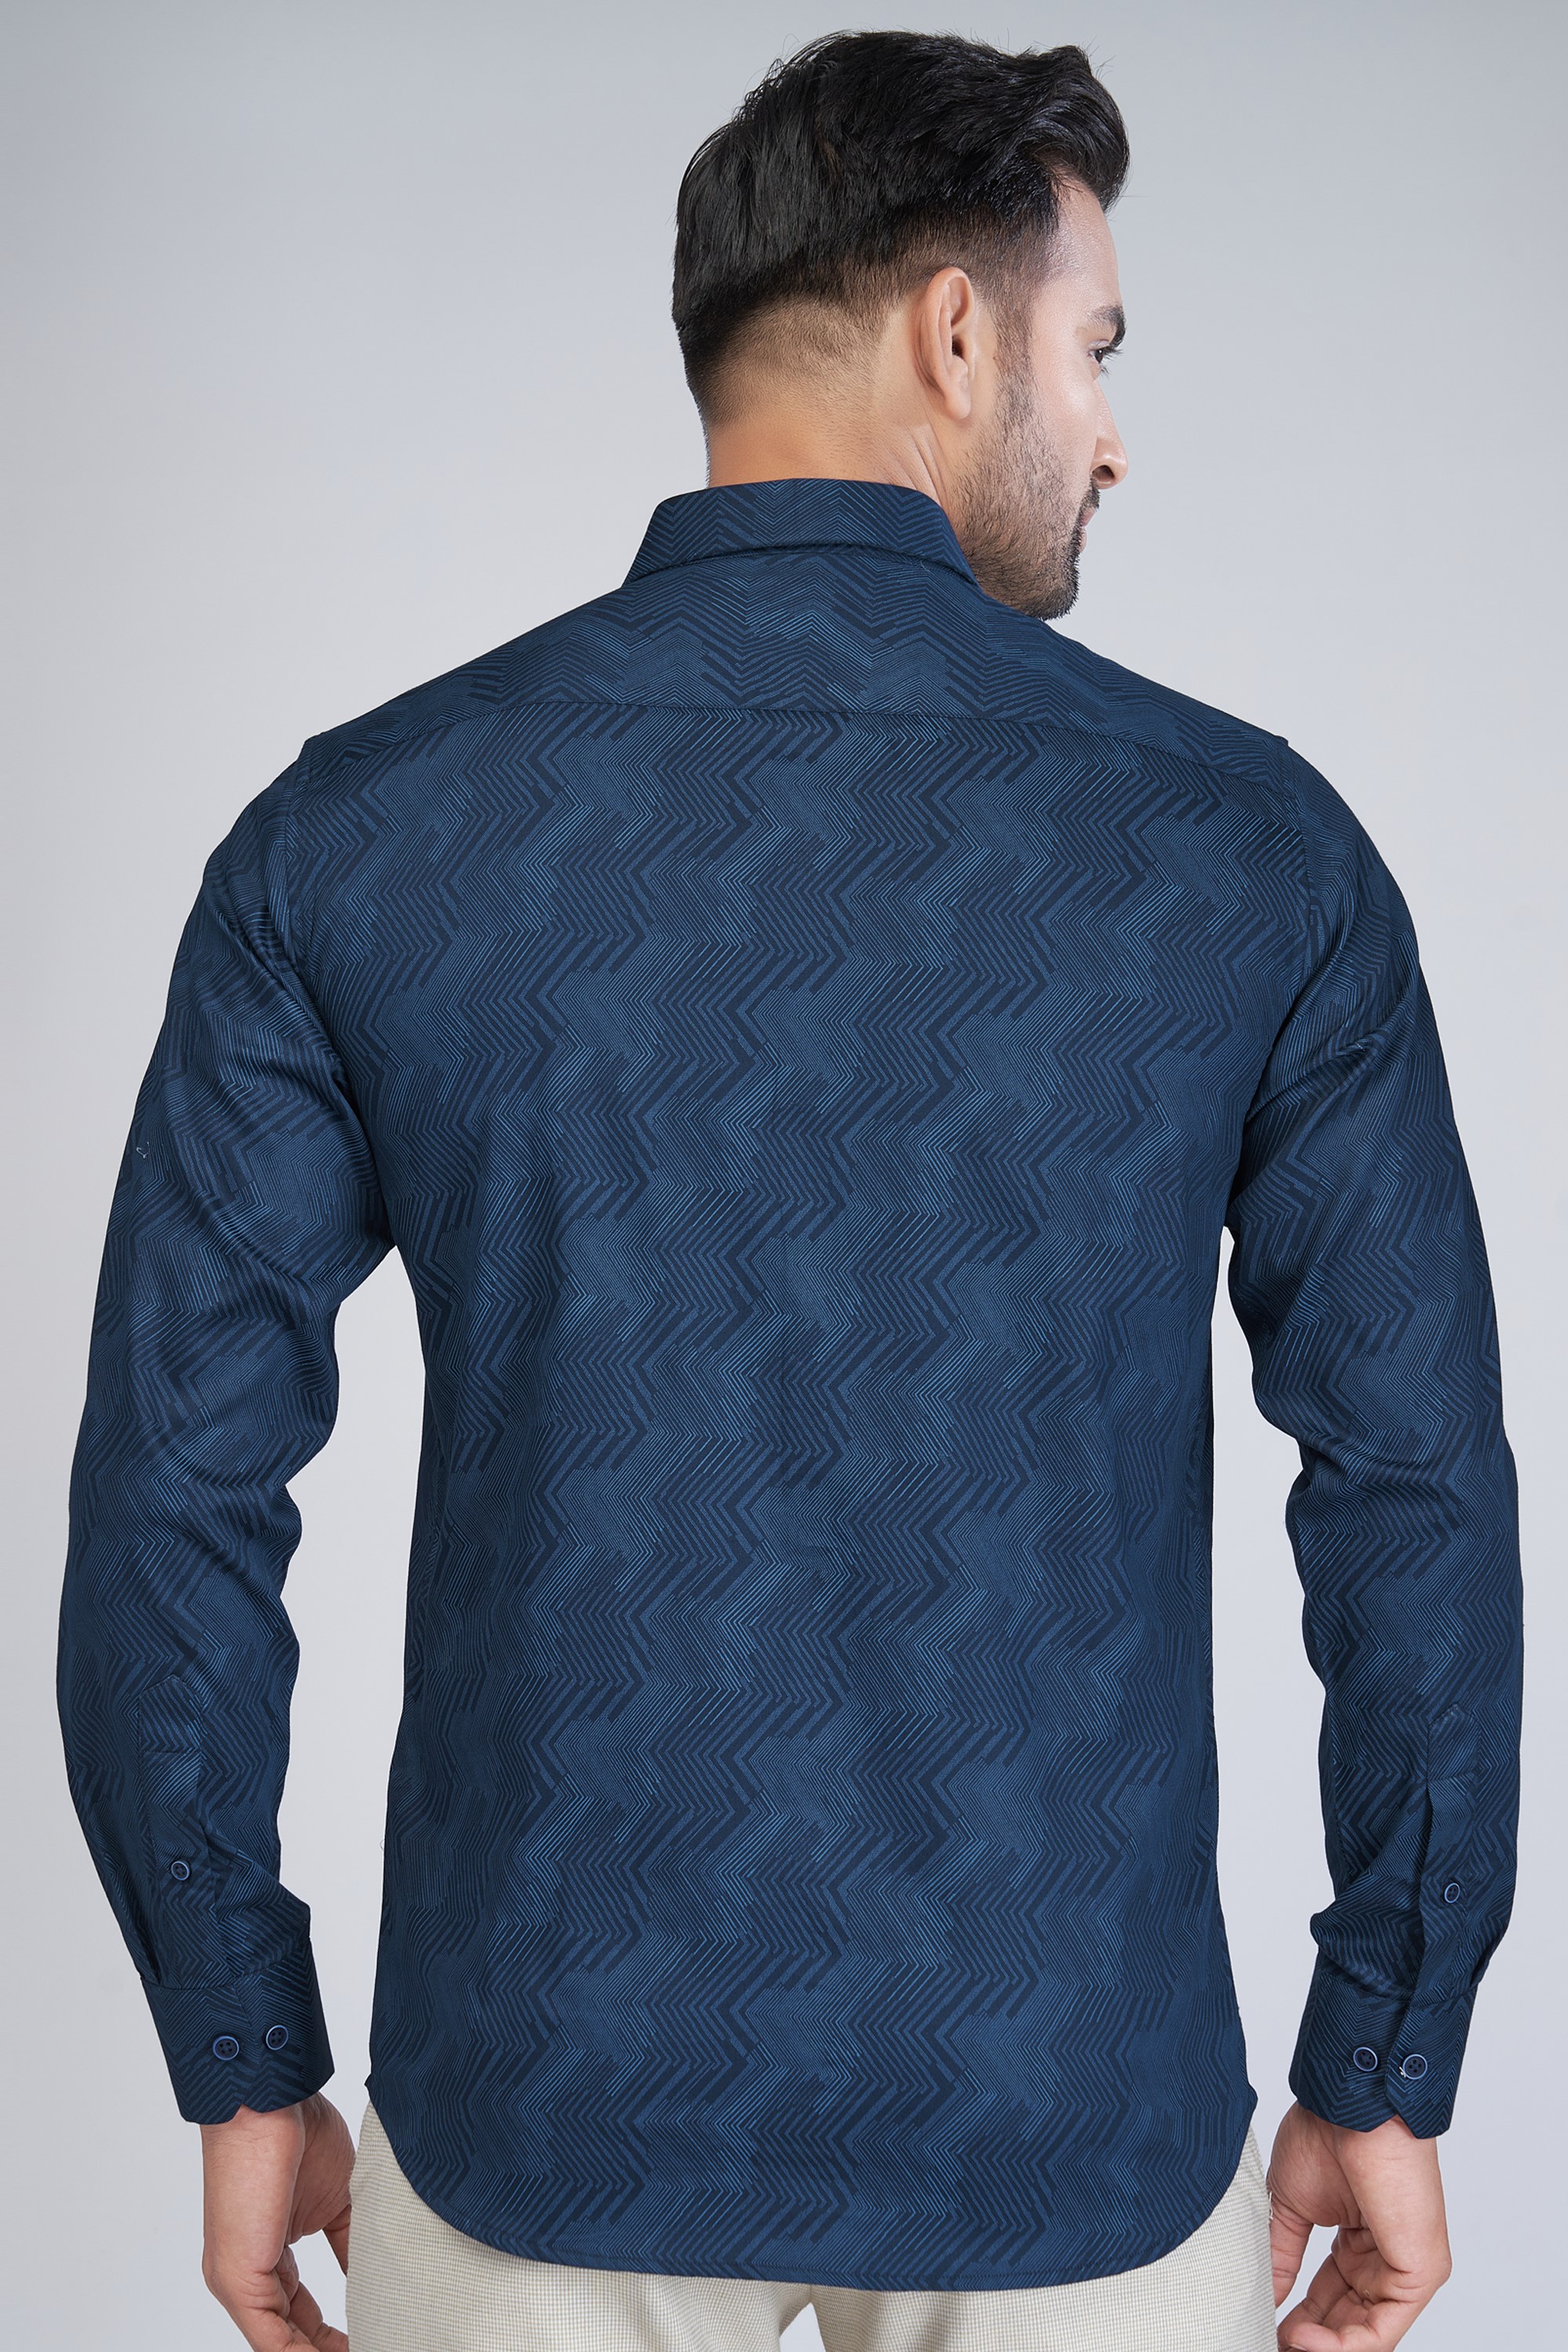 patterned blue shirt for men